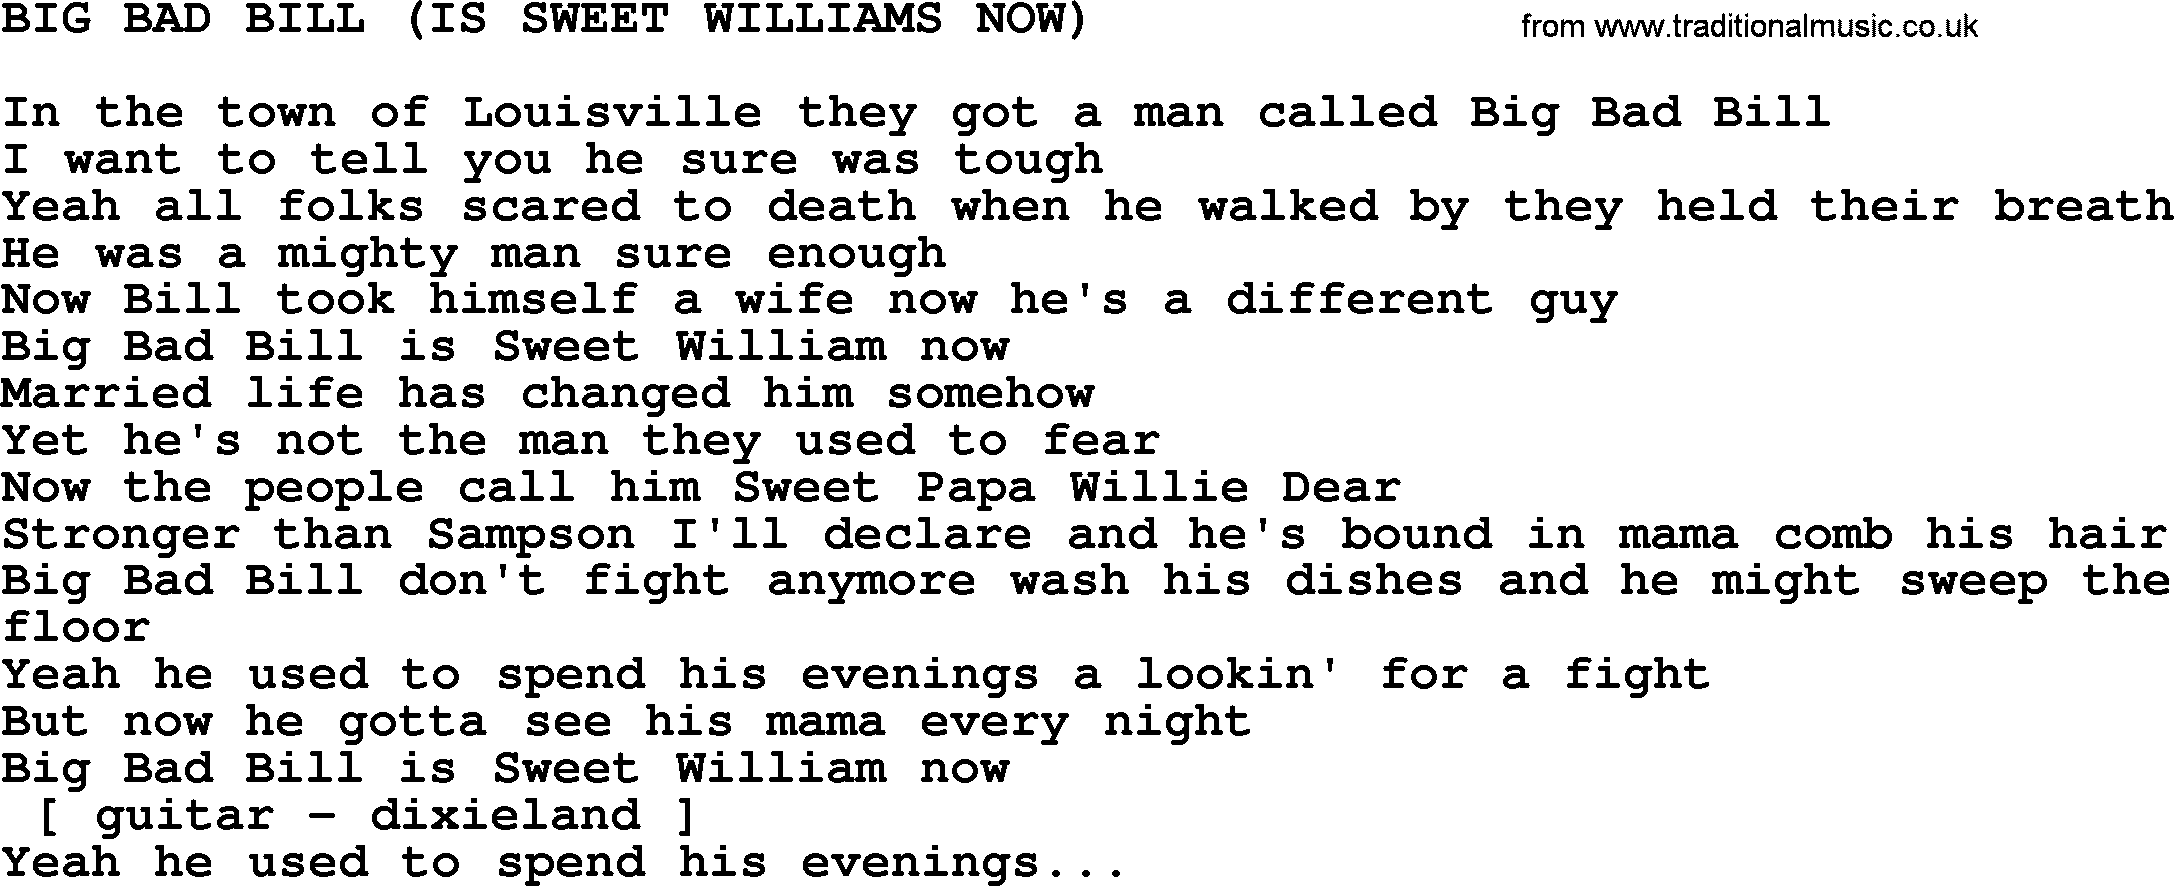 Merle Haggard song: Big Bad Bill Is Sweet Williams Now, lyrics.